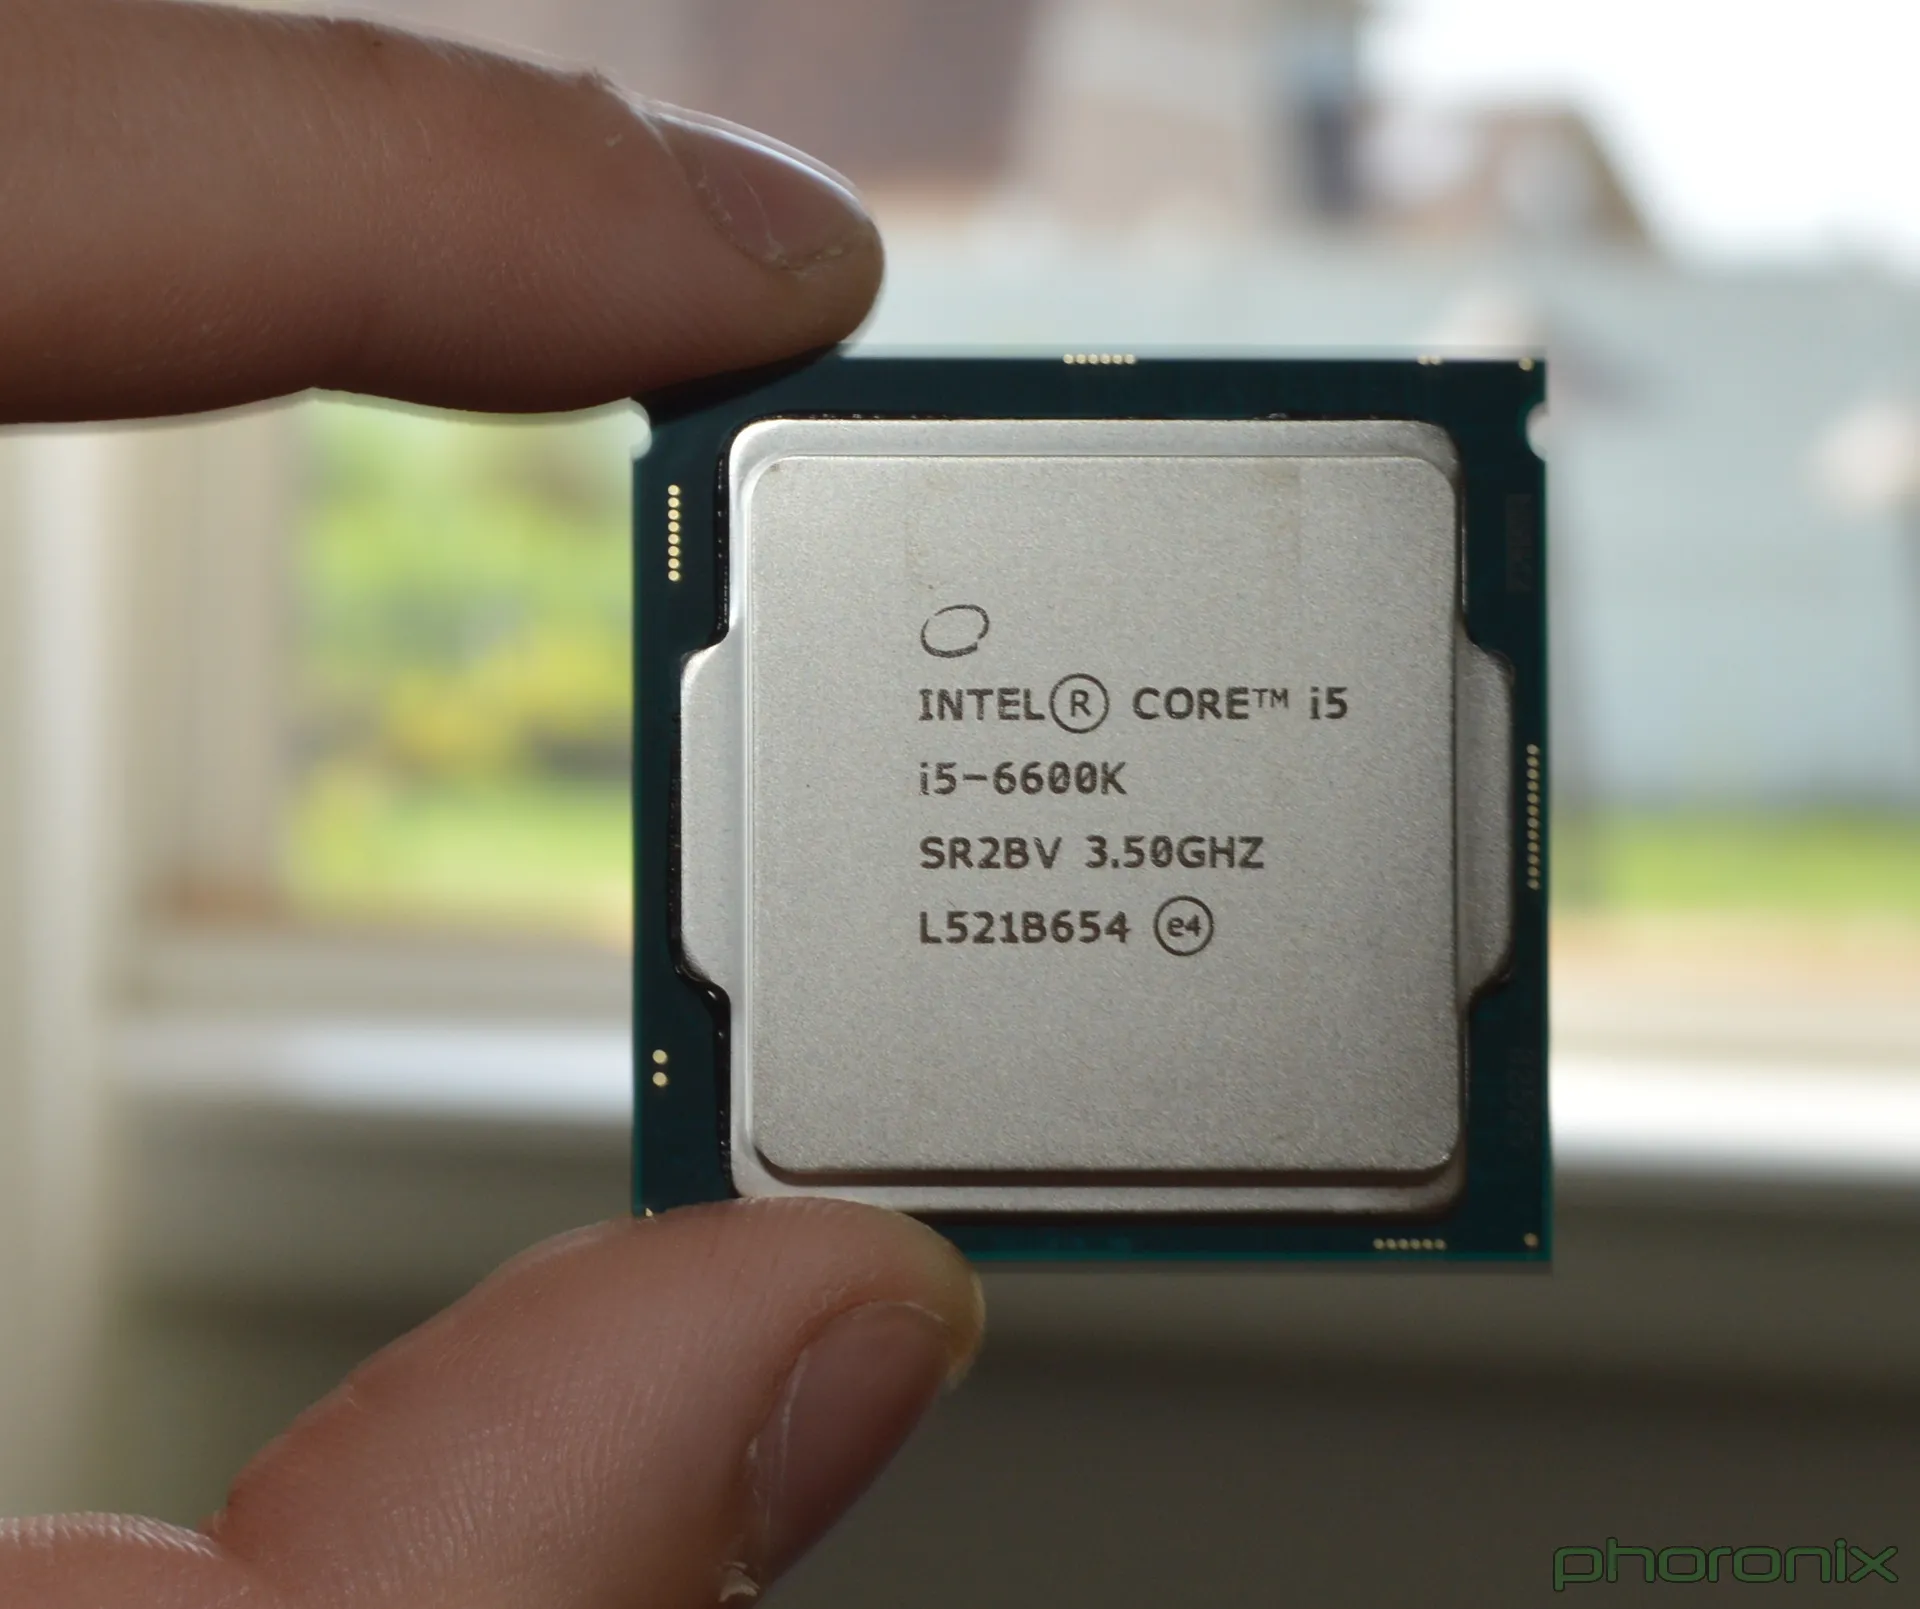 Intel core graphics driver